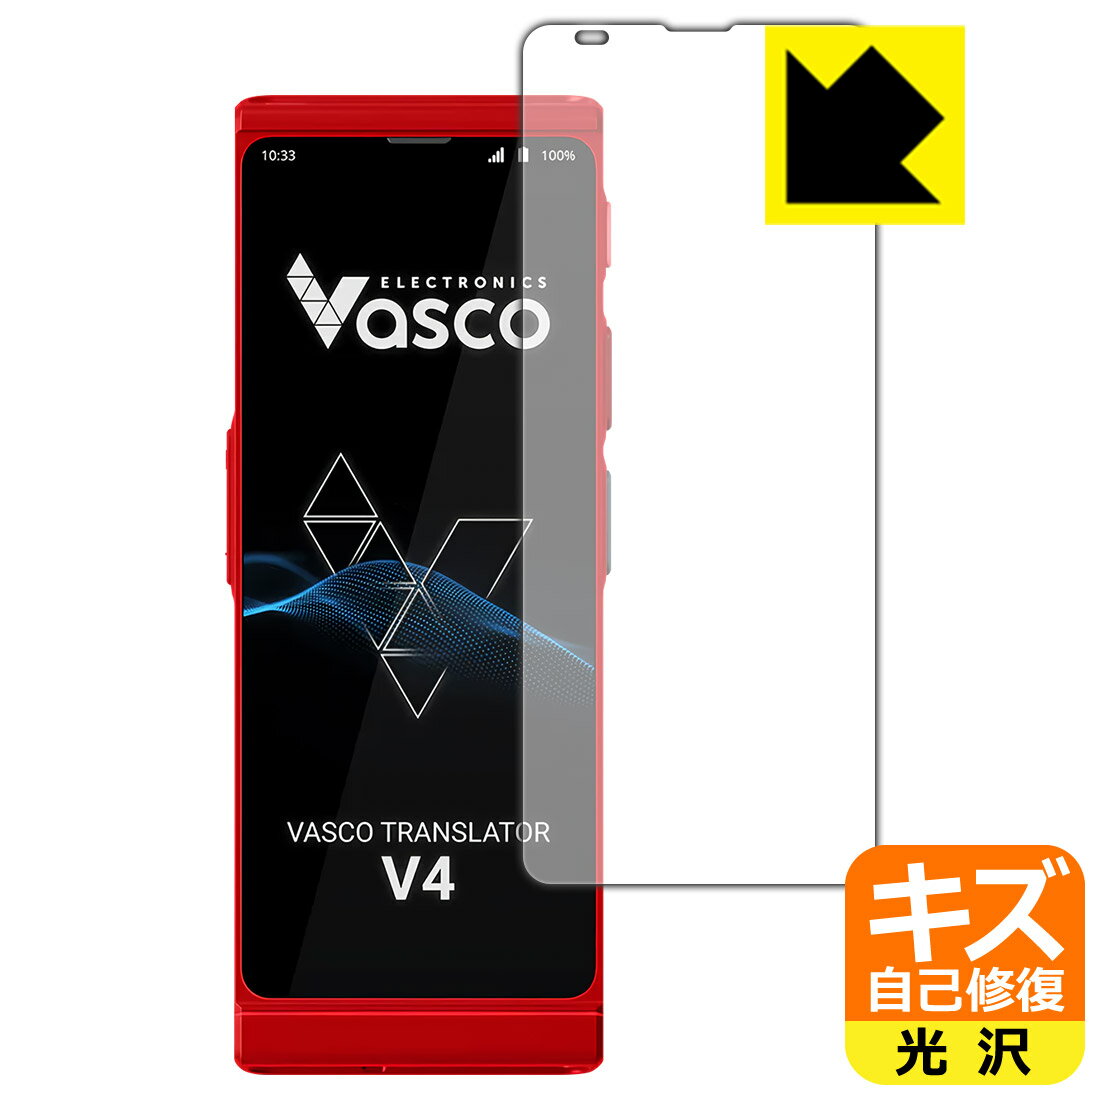 PDA工房 Vasco Translator V4 対応 キズ自己修復 保護 フィルム 光沢 日本製 自社製造直販